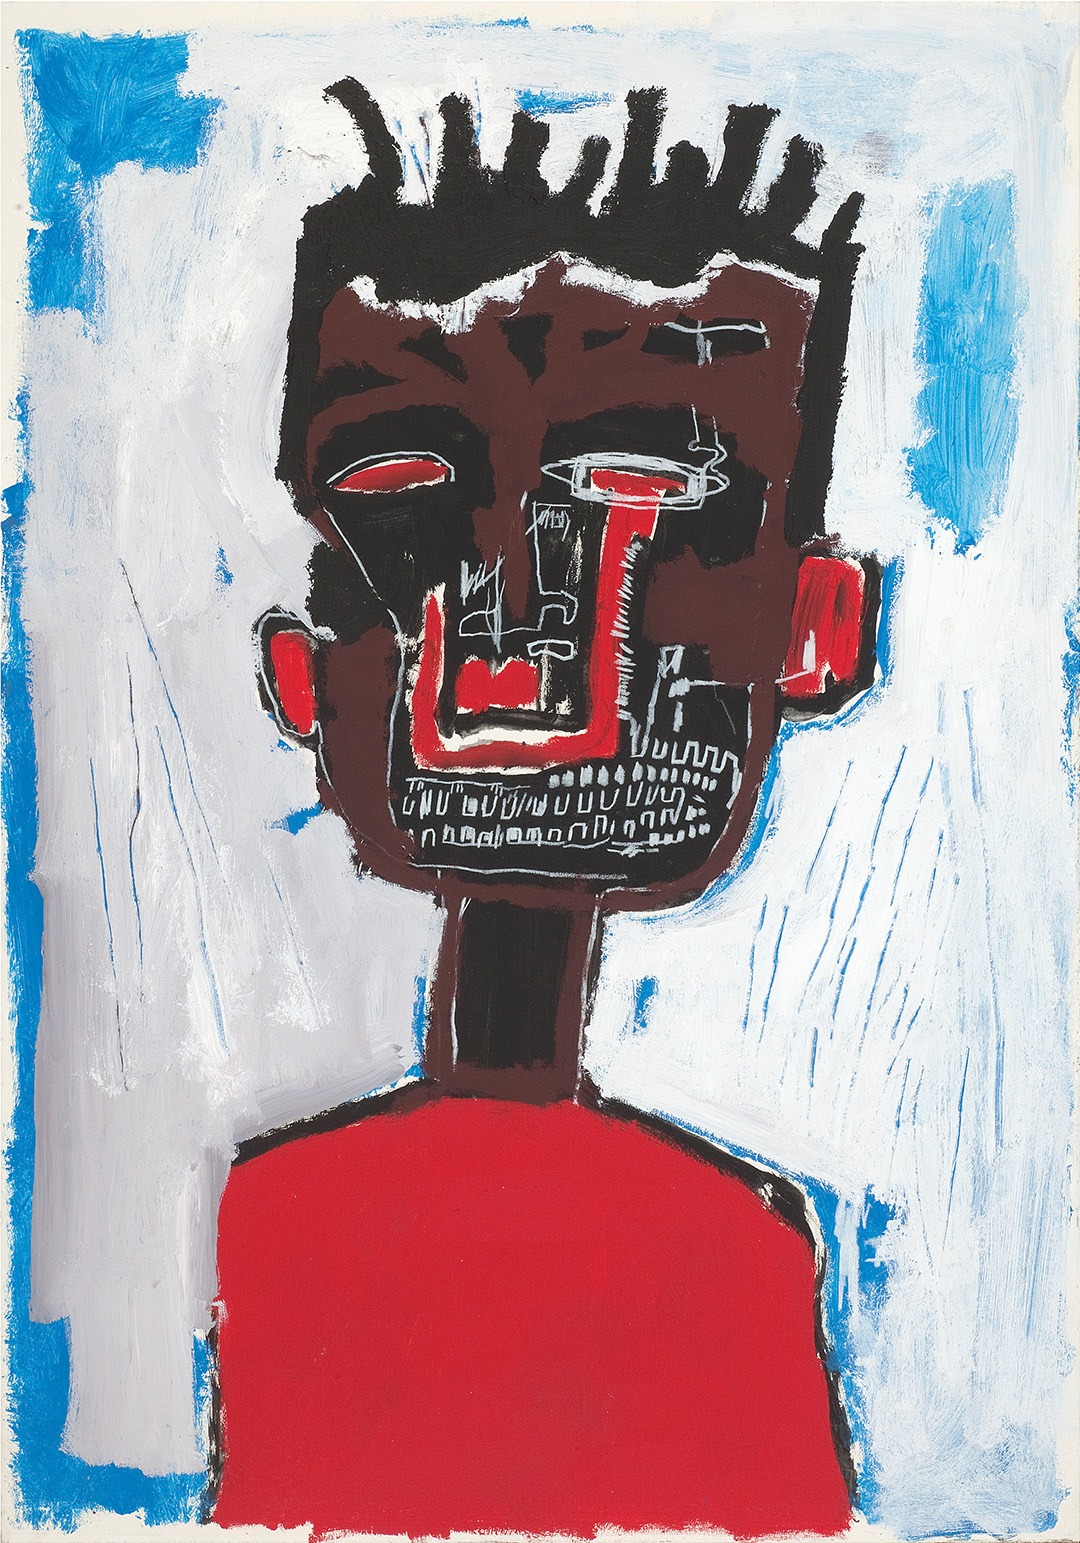 Jean-Michel Basquiat, Self Portrait, 1984, Private collection